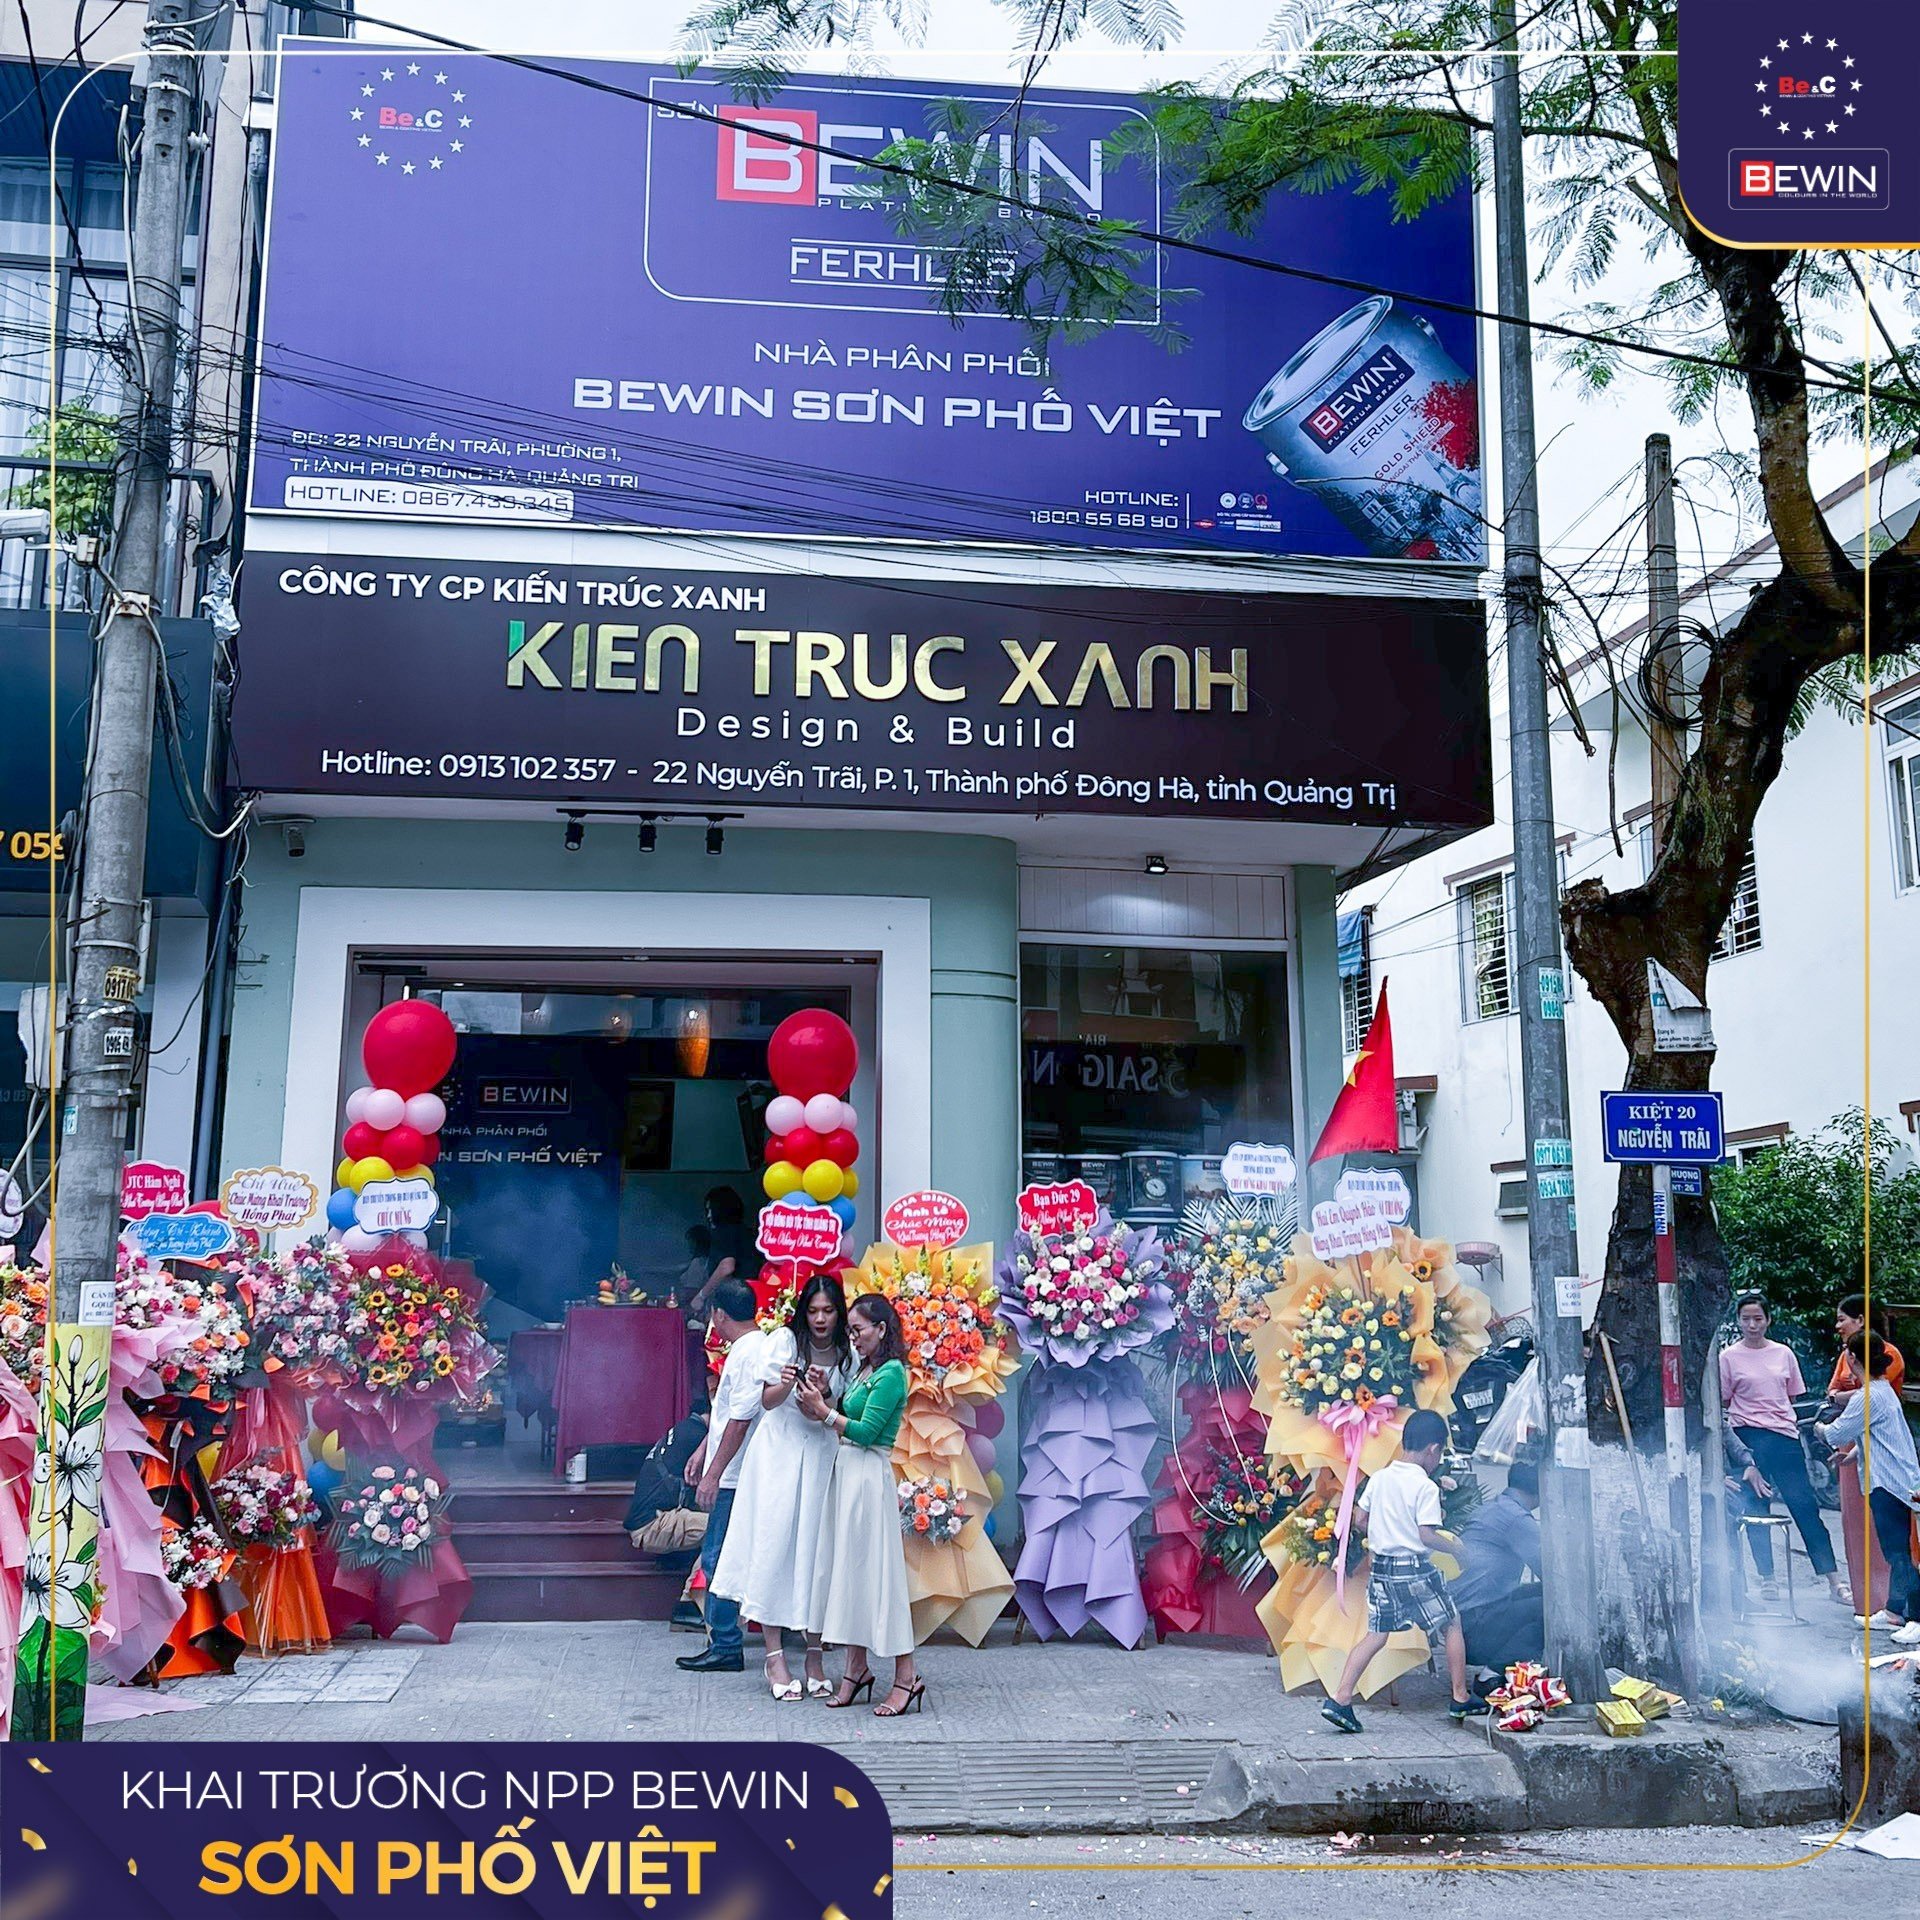 Khai trương NPP Bewin Sơn Phố Việt tại Quảng Trị